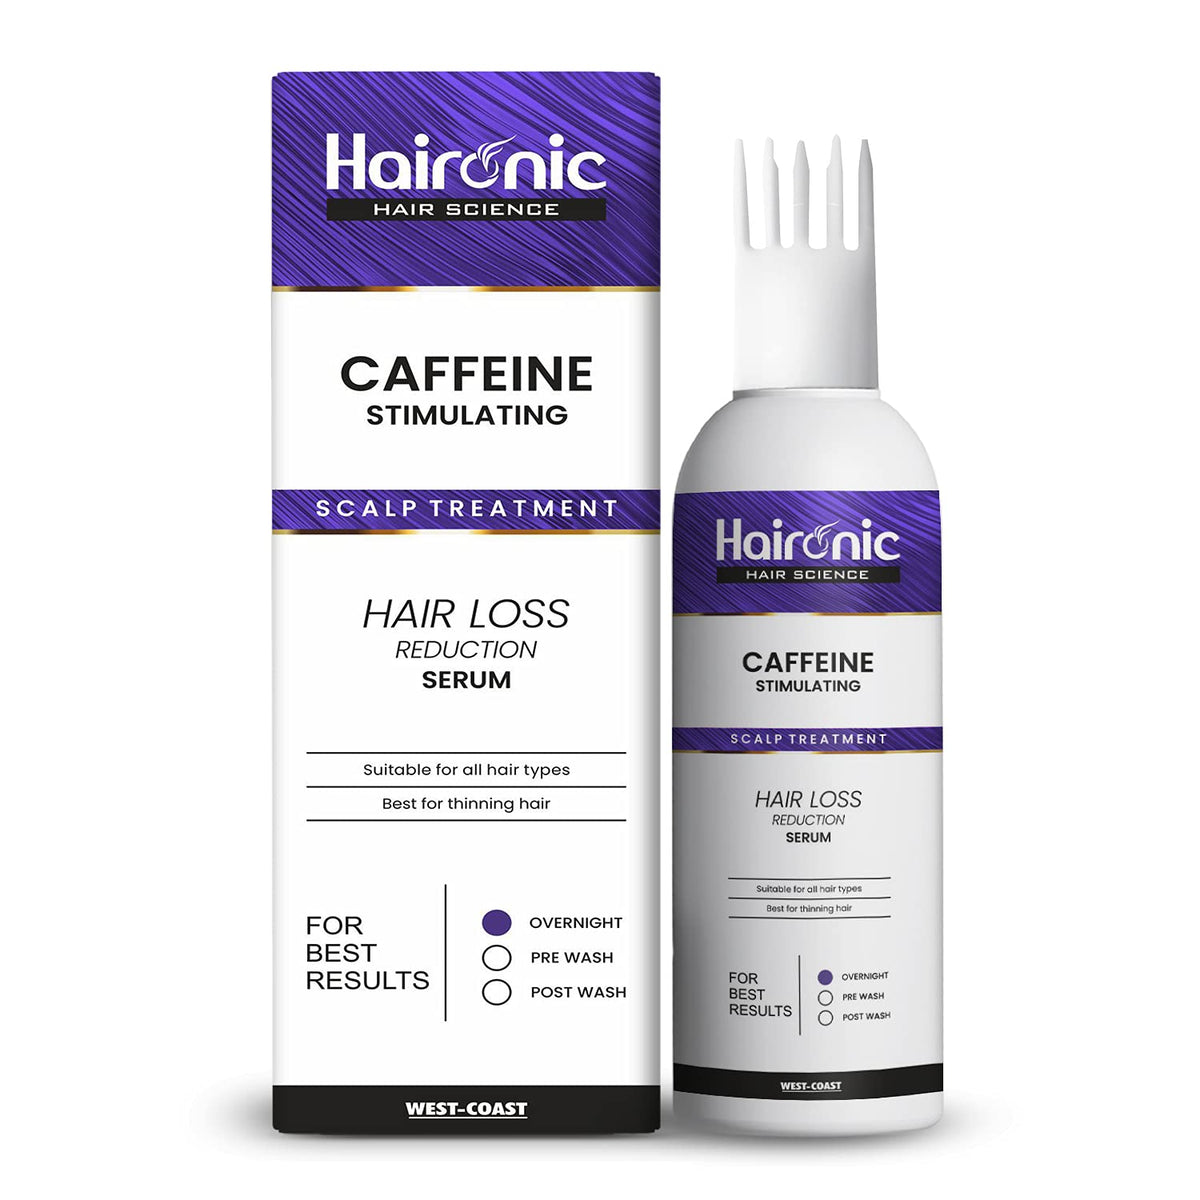 Haironic Caffeine Stimulating Scalp Treatment Hair Serum | For All Hair Types | Reduce Hair Loss, Dandruff & Stimulate Hair Growth – 100ml